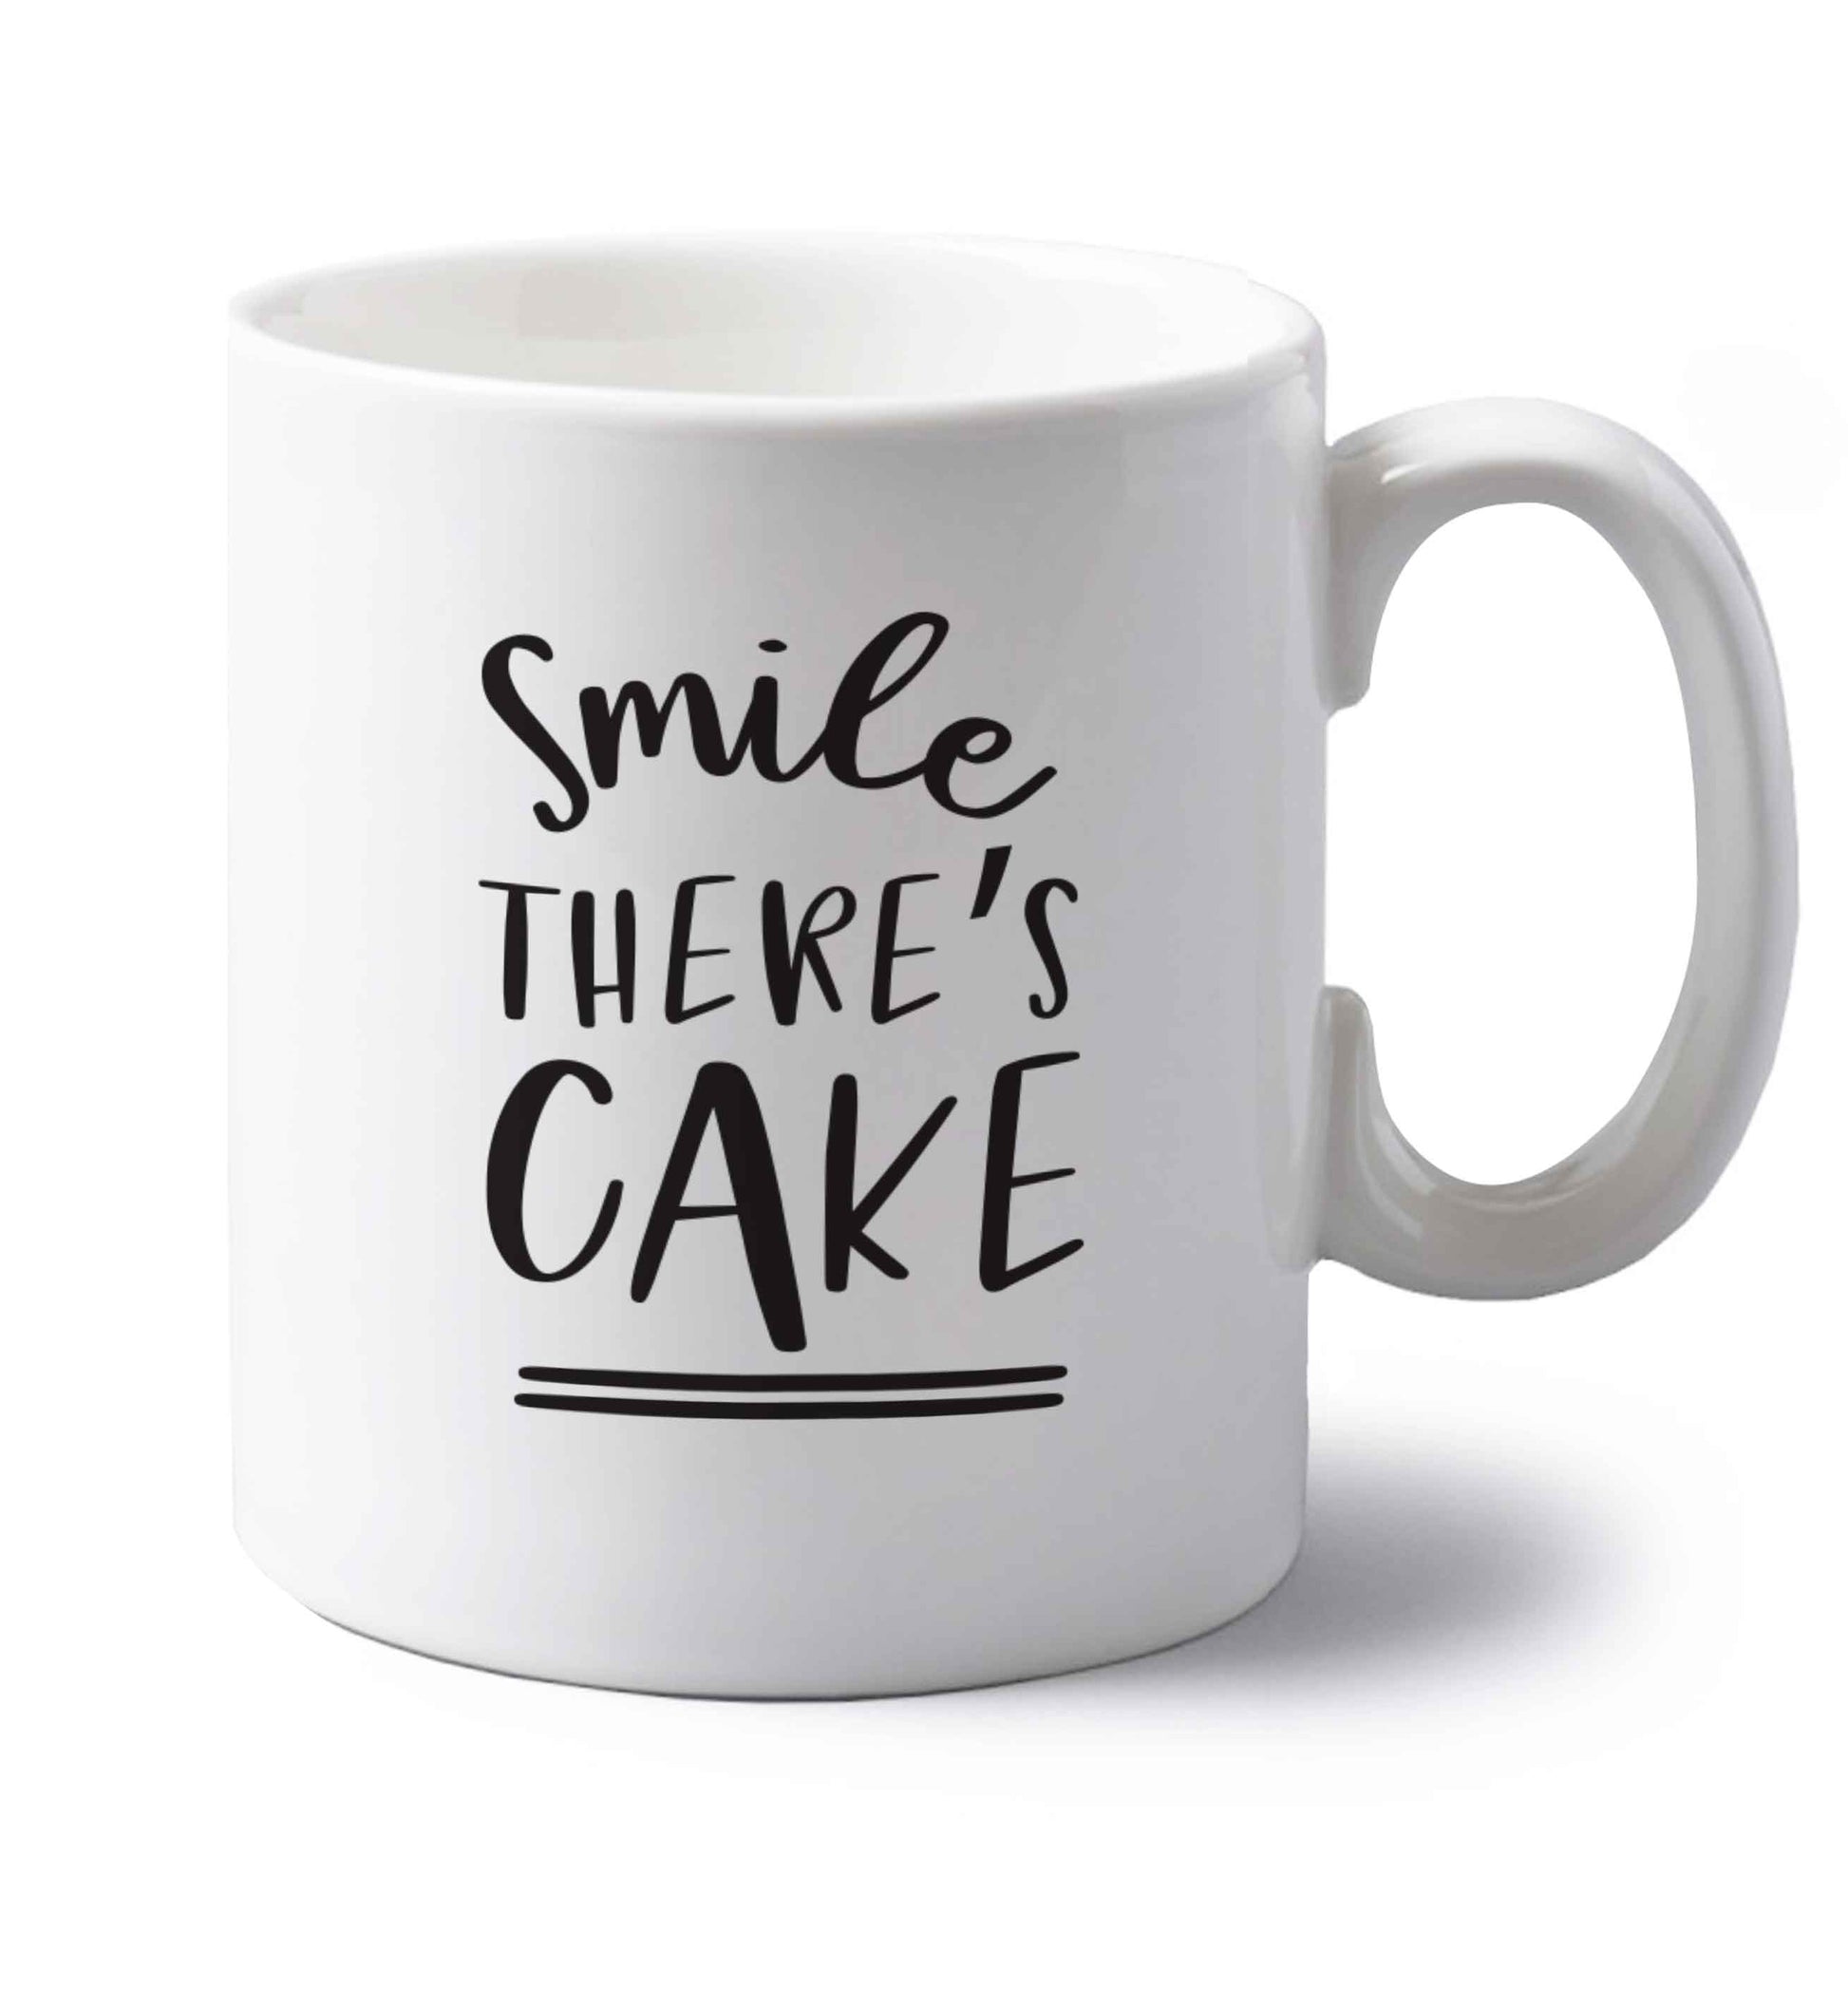 Smile there's cake left handed white ceramic mug 